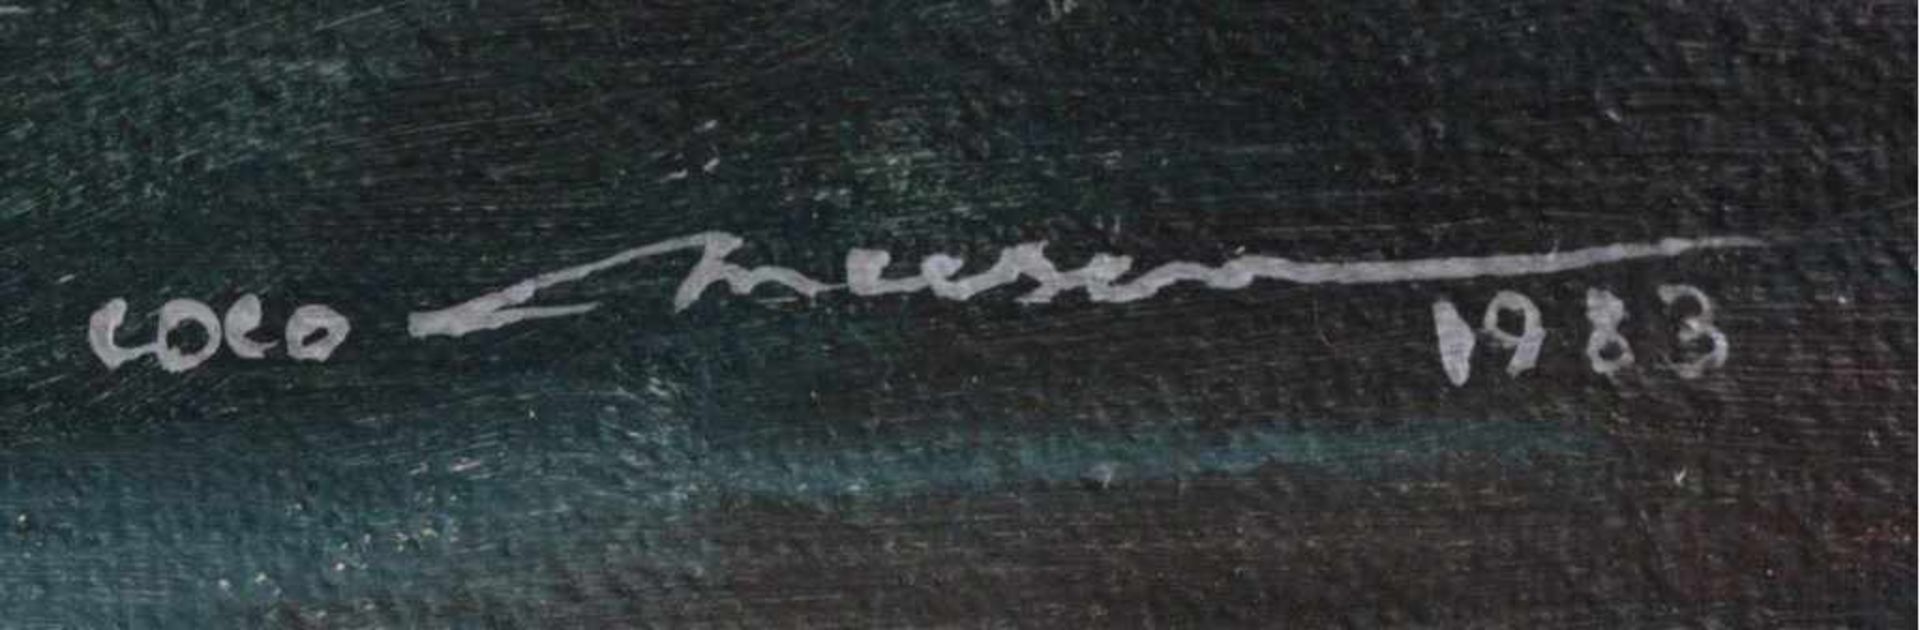 Stilleben, Blumenvase, 1983Öl/Lwd, unten links unleserlich signiert, nicht gerahmt, ca.49,5 x 40 cm - Bild 2 aus 2